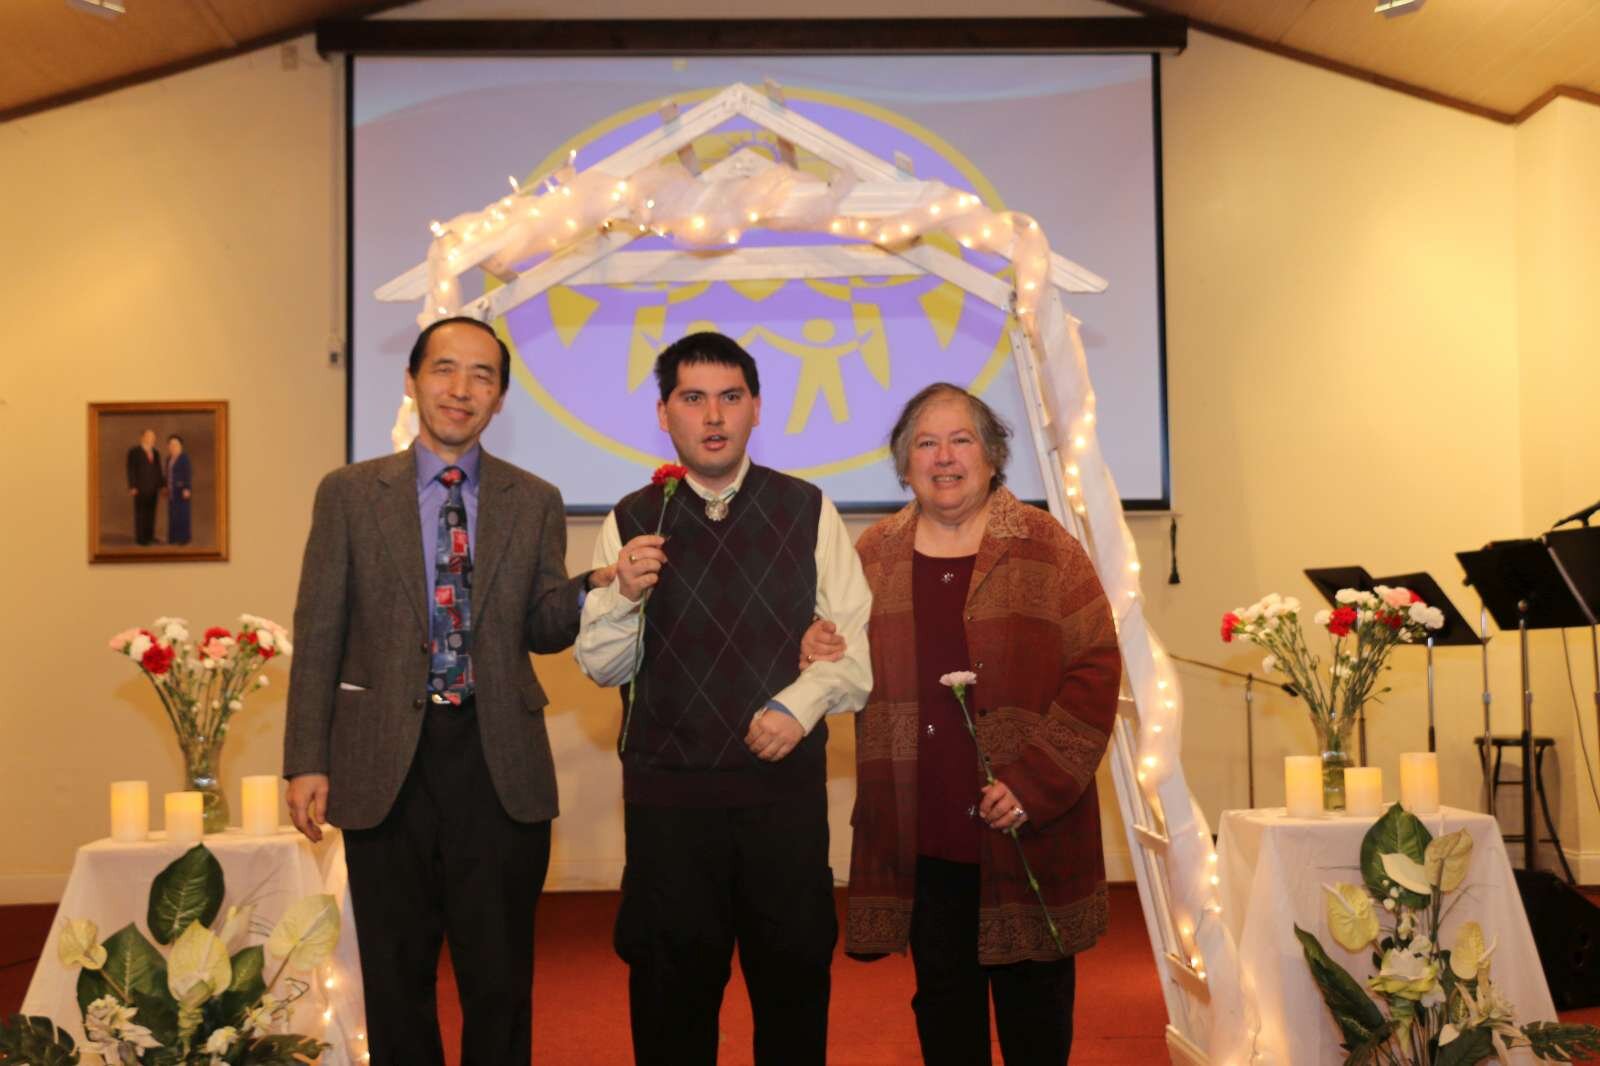 Pastor Kimura's family